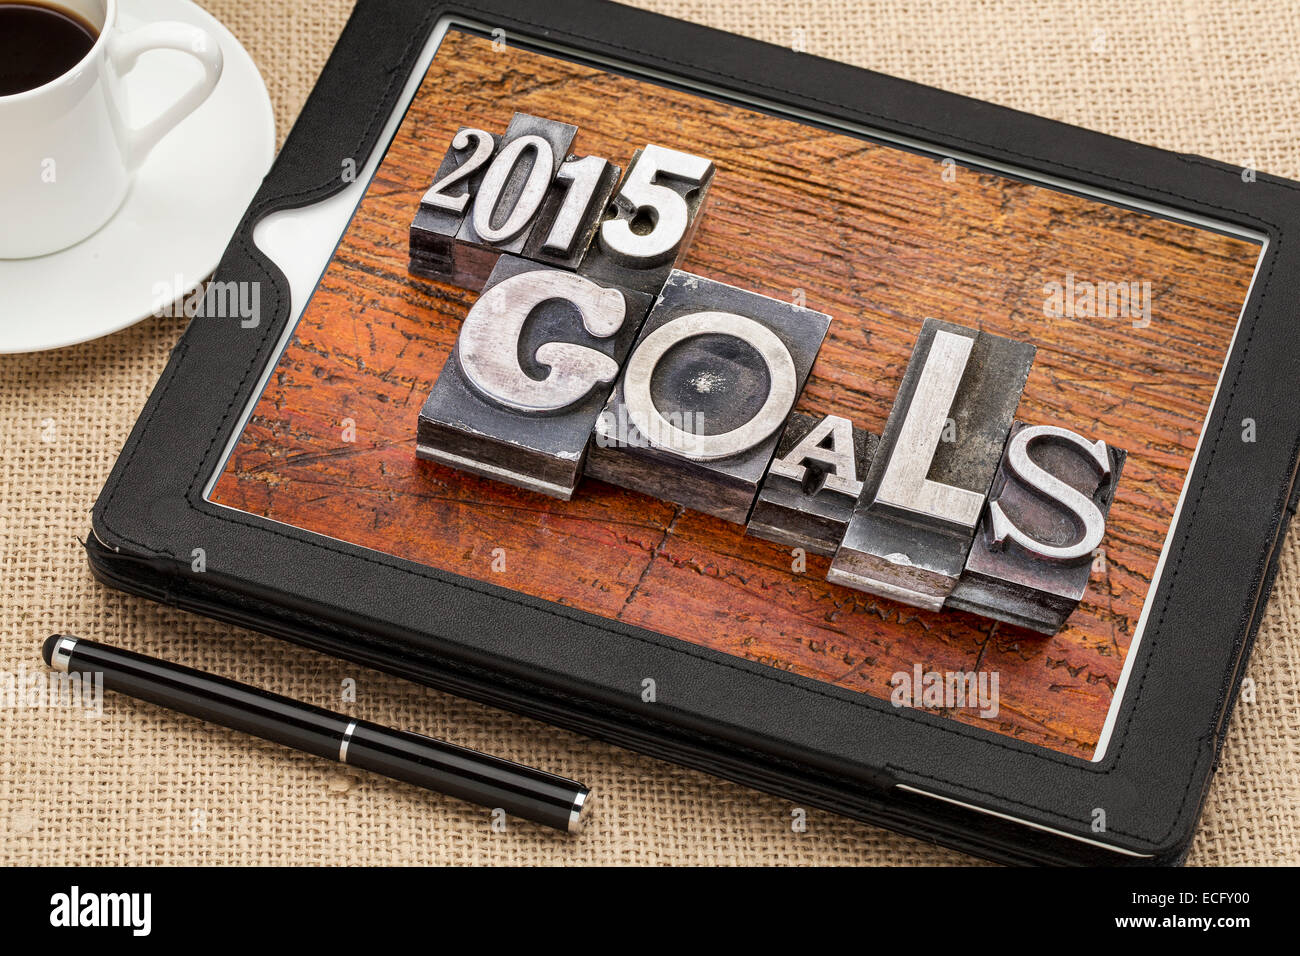 Objectifs 2015 - résolution du Nouvel An - concept du texte dans les blocs de type métal vintage grunge sur bois contre une tablette numérique Banque D'Images